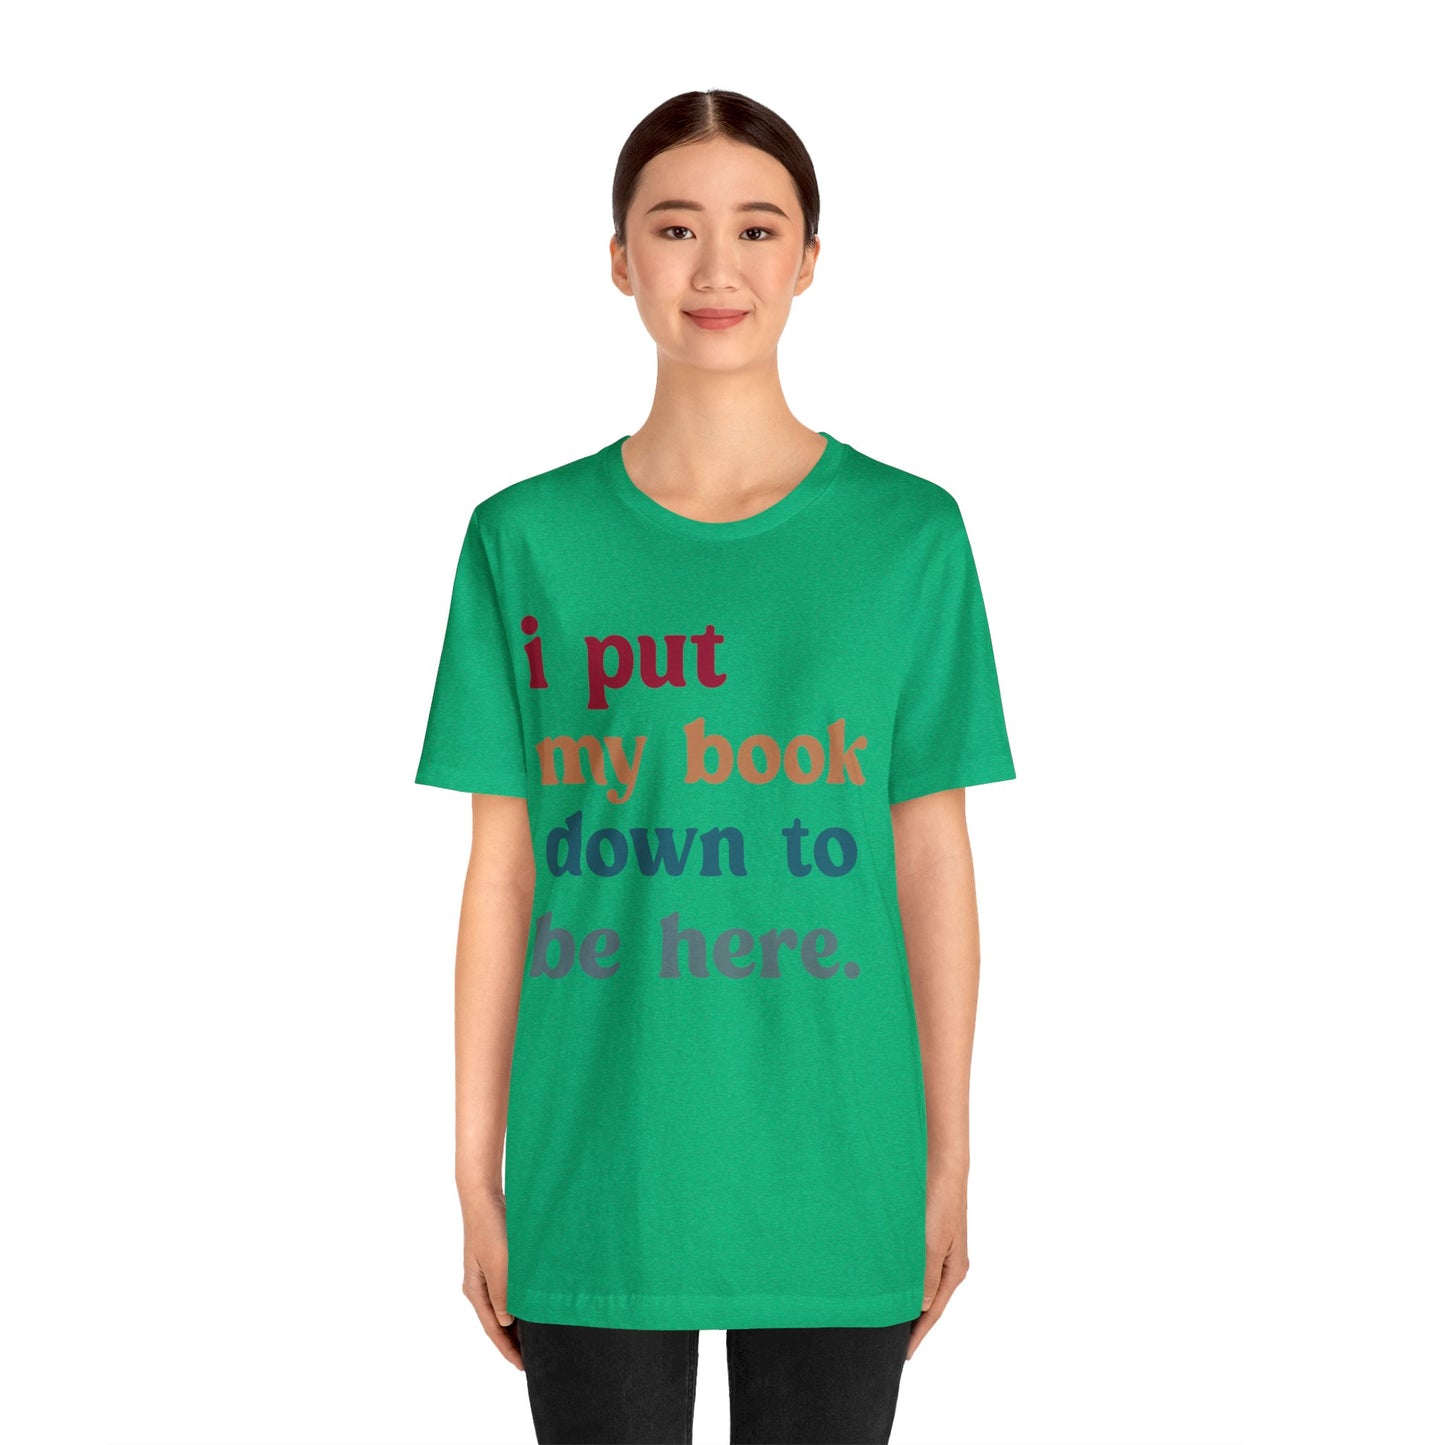 I Put My Book Down To Be Here Shirt, Bookworm Gift, Librarian Shirt, Shirt for Teacher, Book Lovers Club Shirt, Book Nerd Shirt, T1224